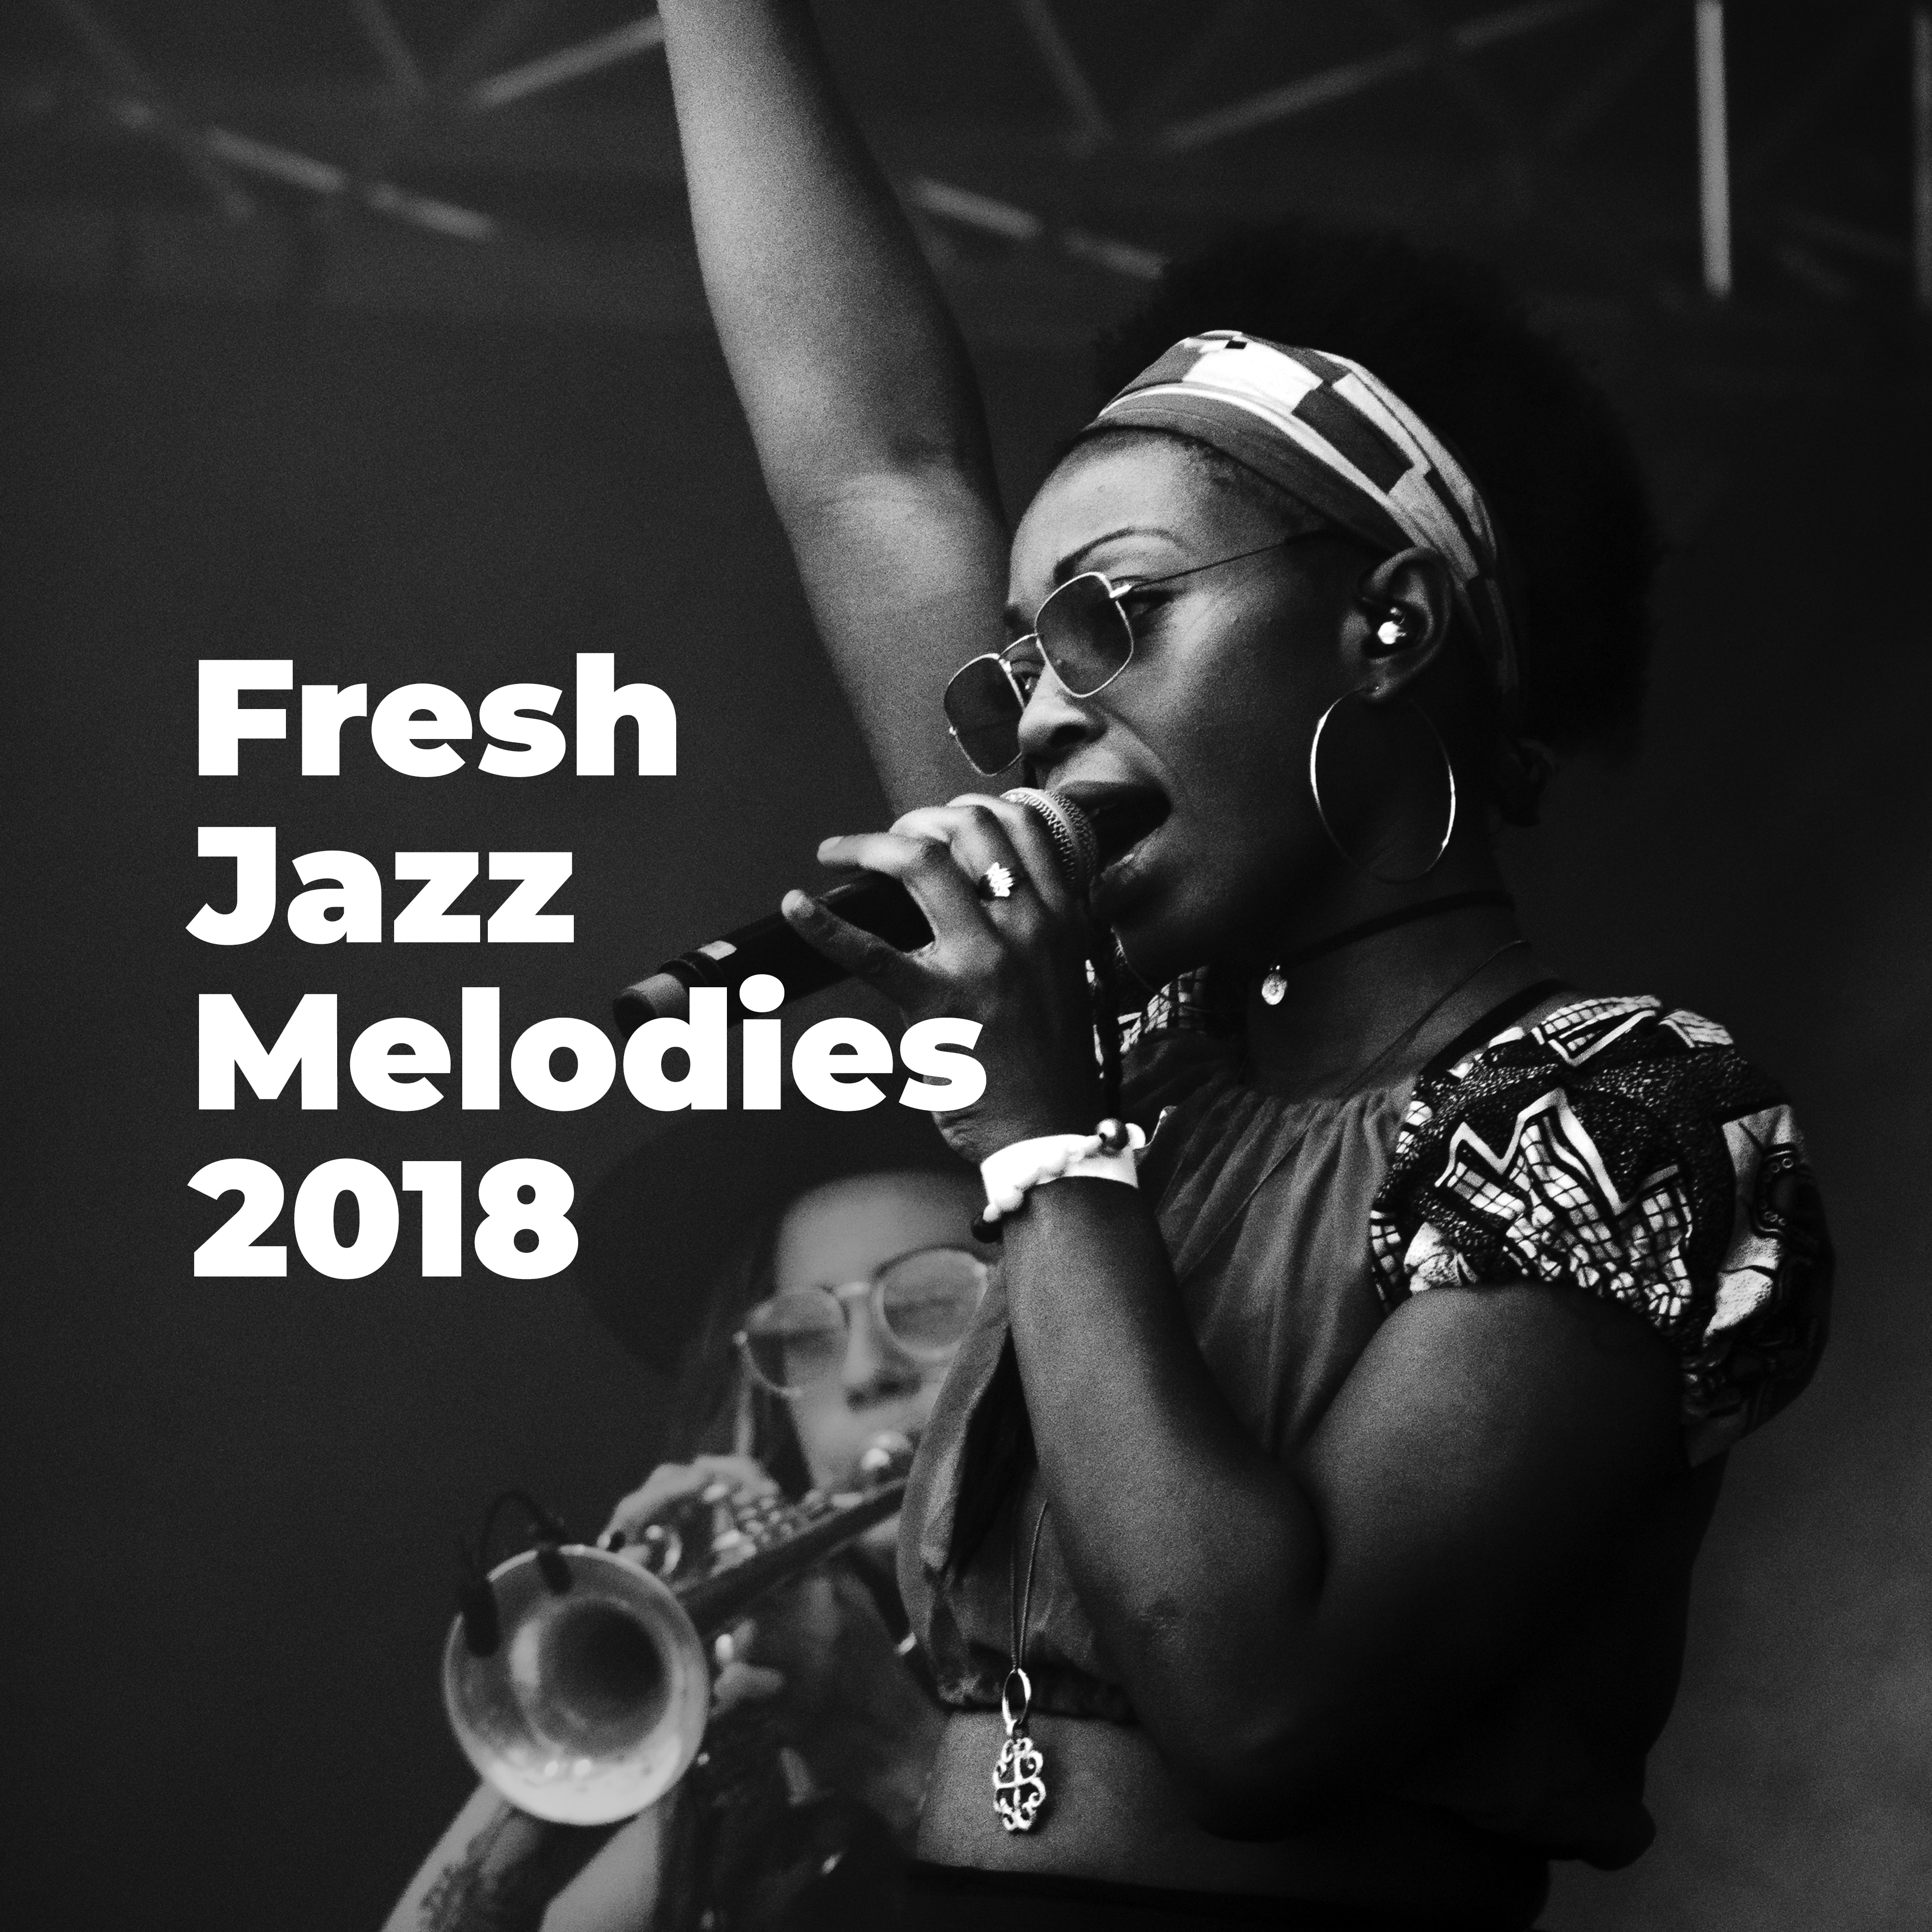 Fresh Jazz Melodies 2018